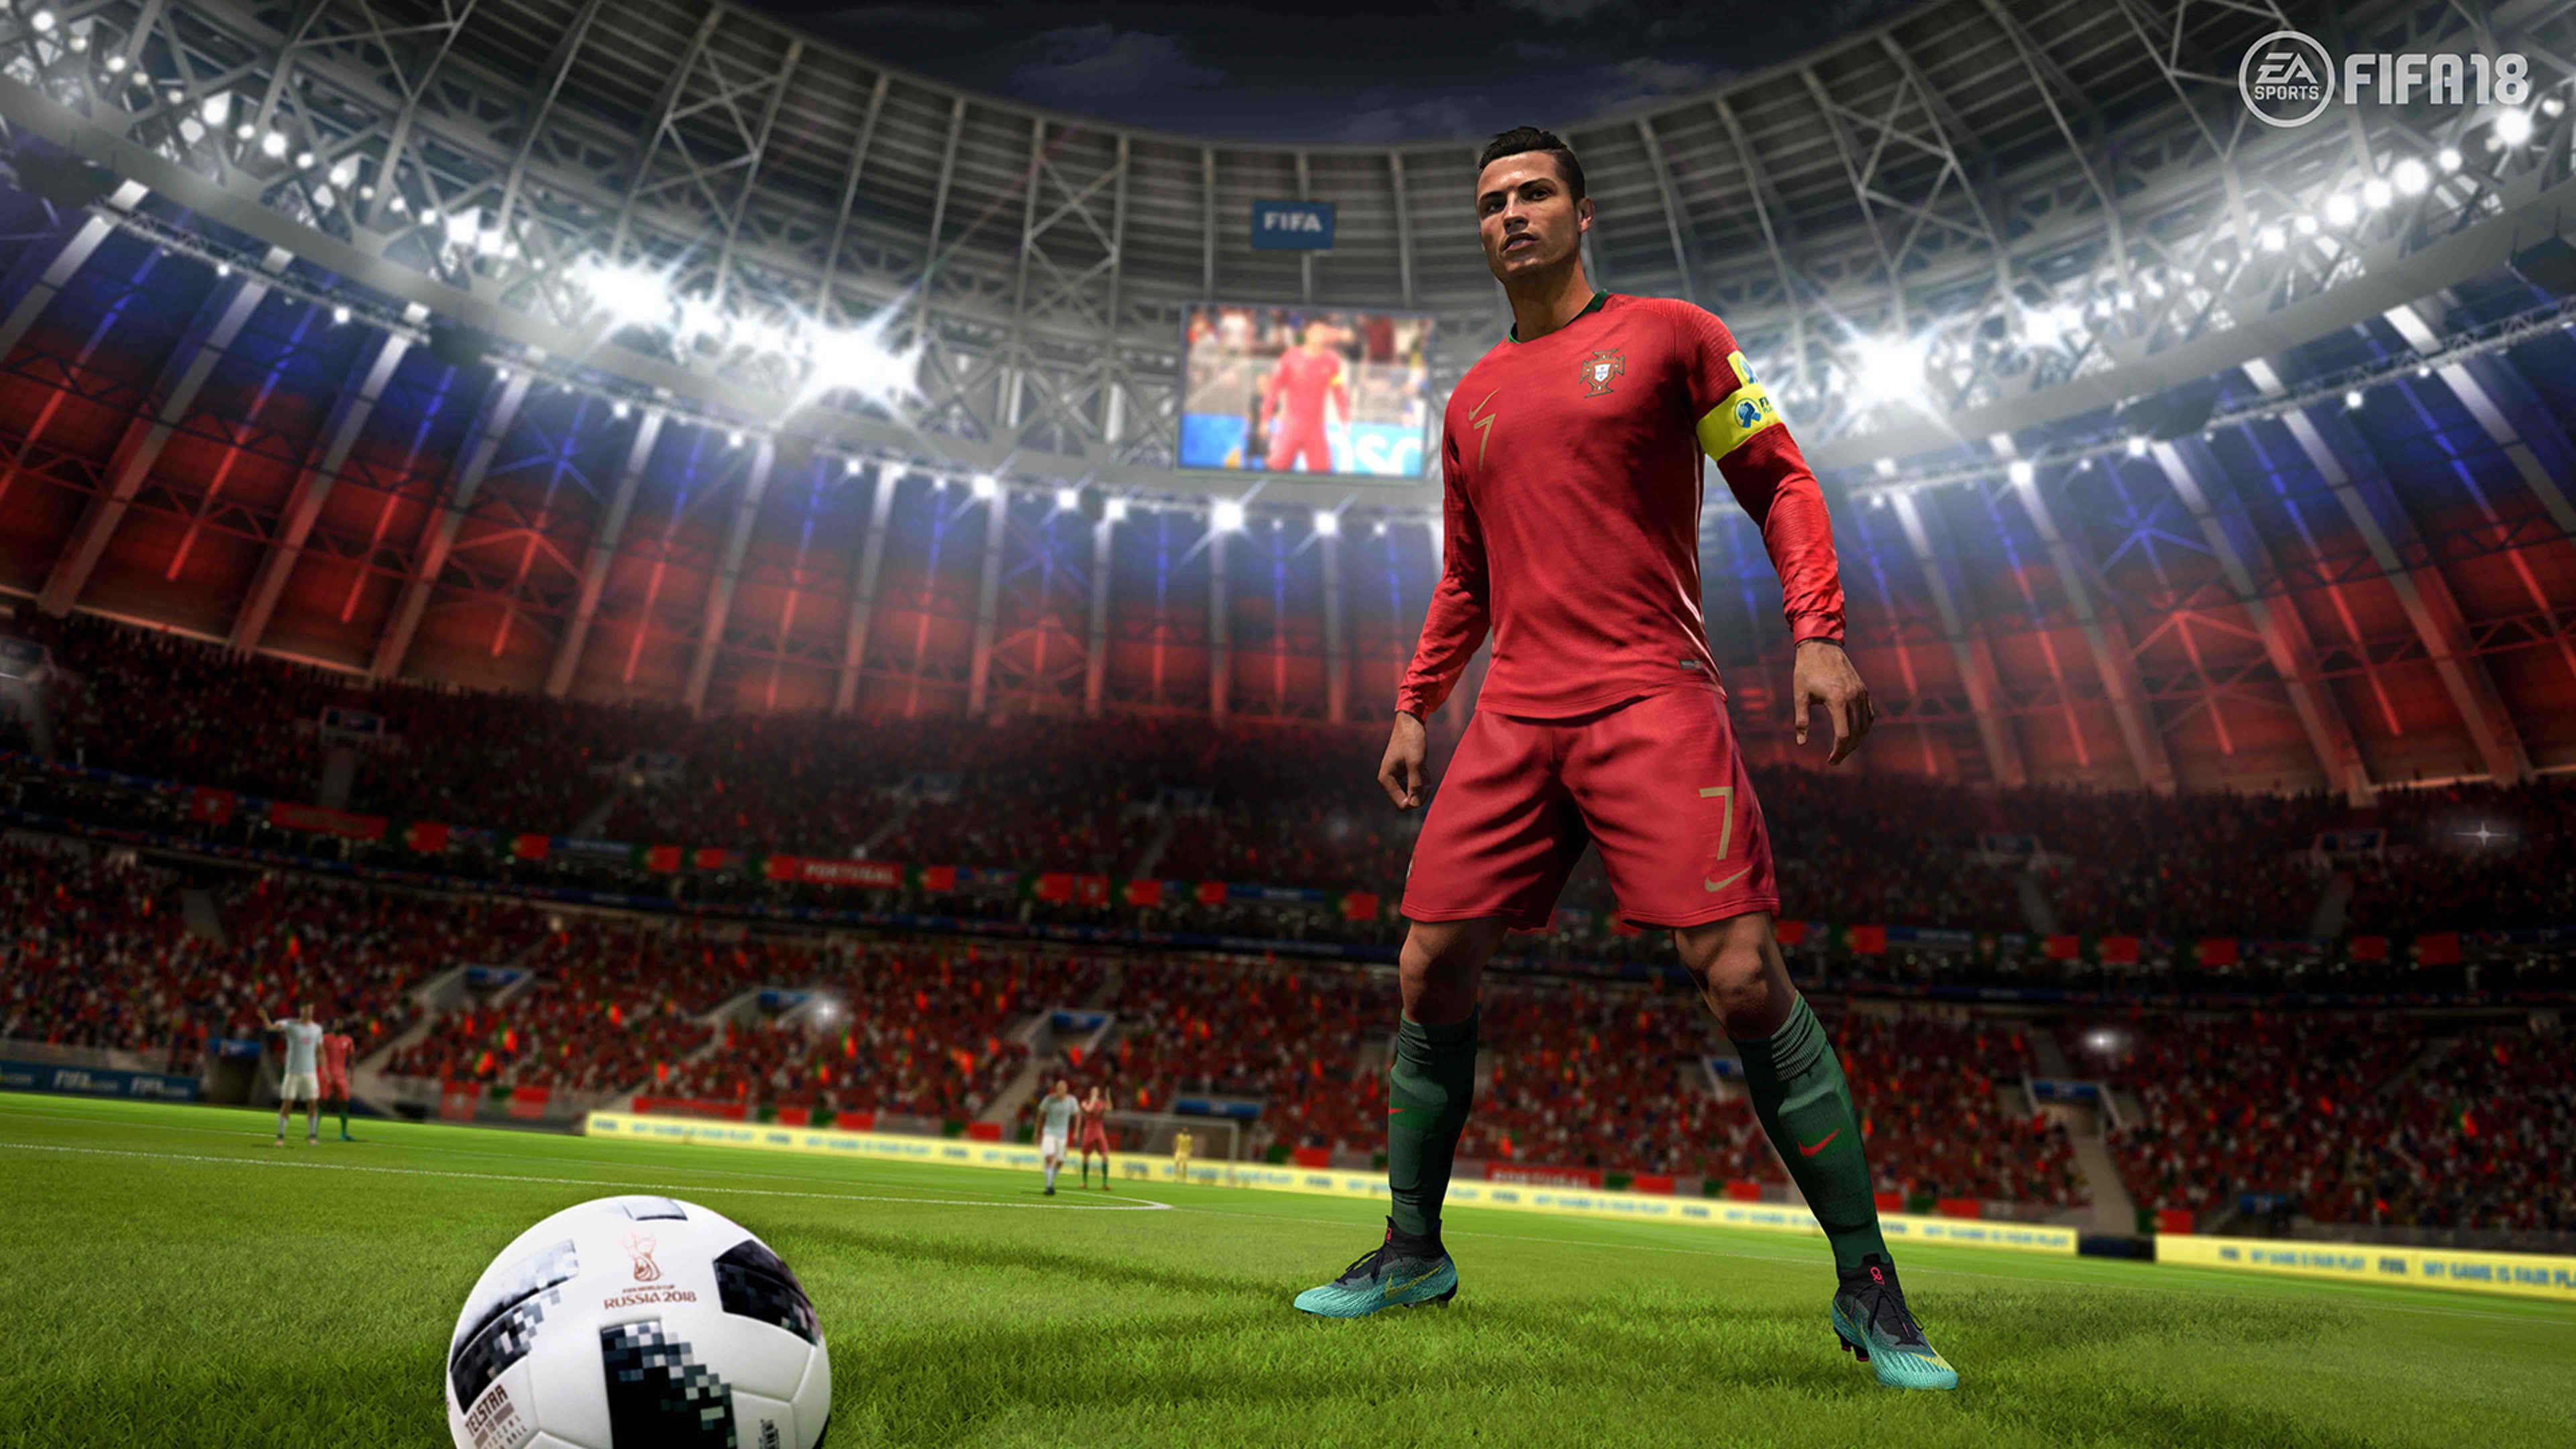 FIFA 18 terá DLC grátis que incluirá a Copa do Mundo 2018 no game